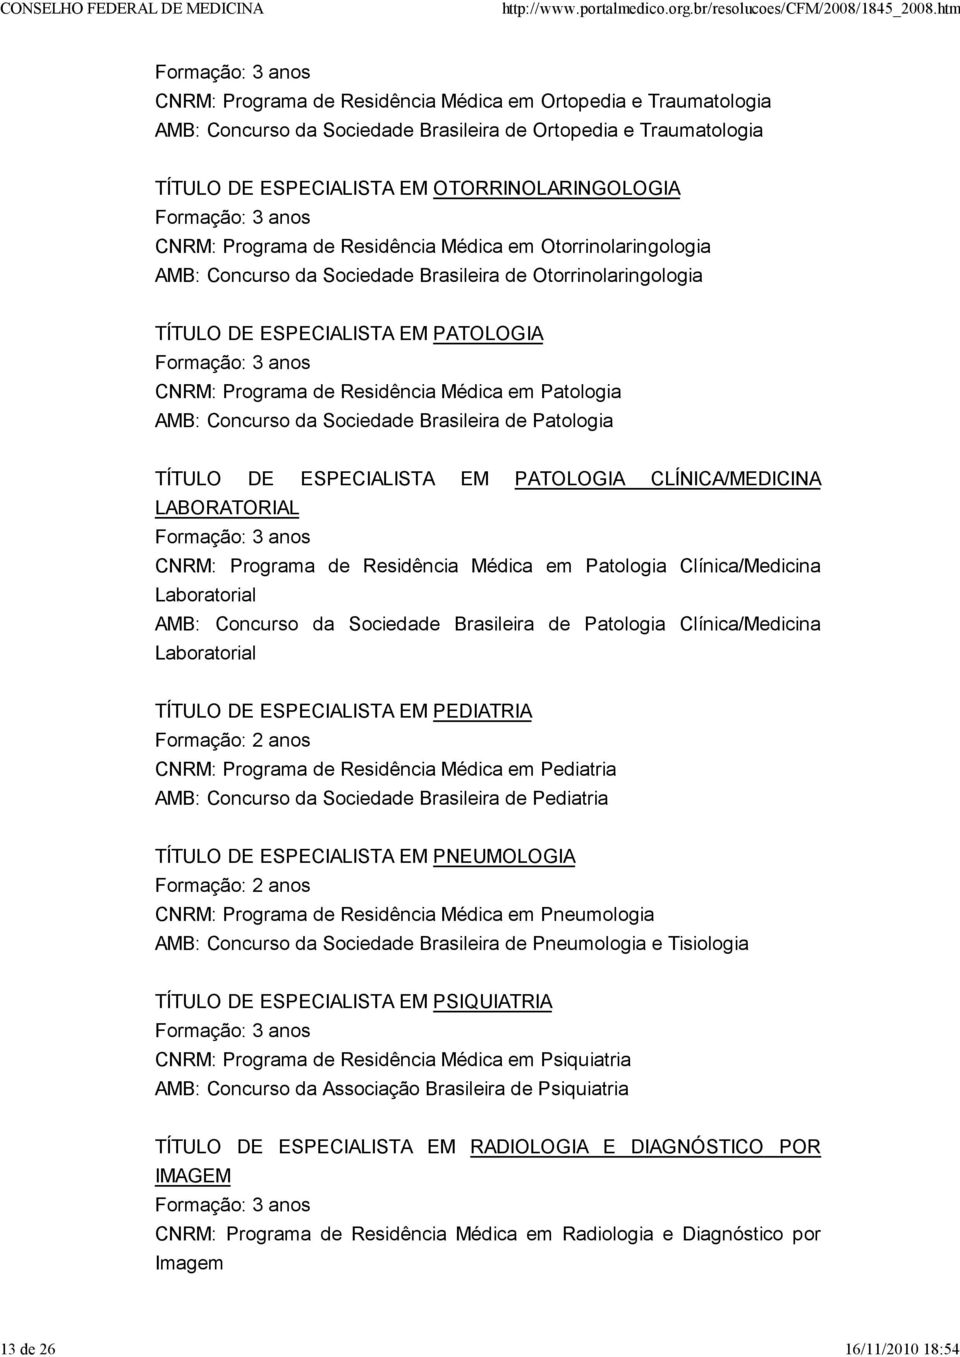 Residência Médica em Patologia AMB: Concurso da Sociedade Brasileira de Patologia TÍTULO DE ESPECIALISTA EM PATOLOGIA CLÍNICA/MEDICINA LABORATORIAL CNRM: Programa de Residência Médica em Patologia